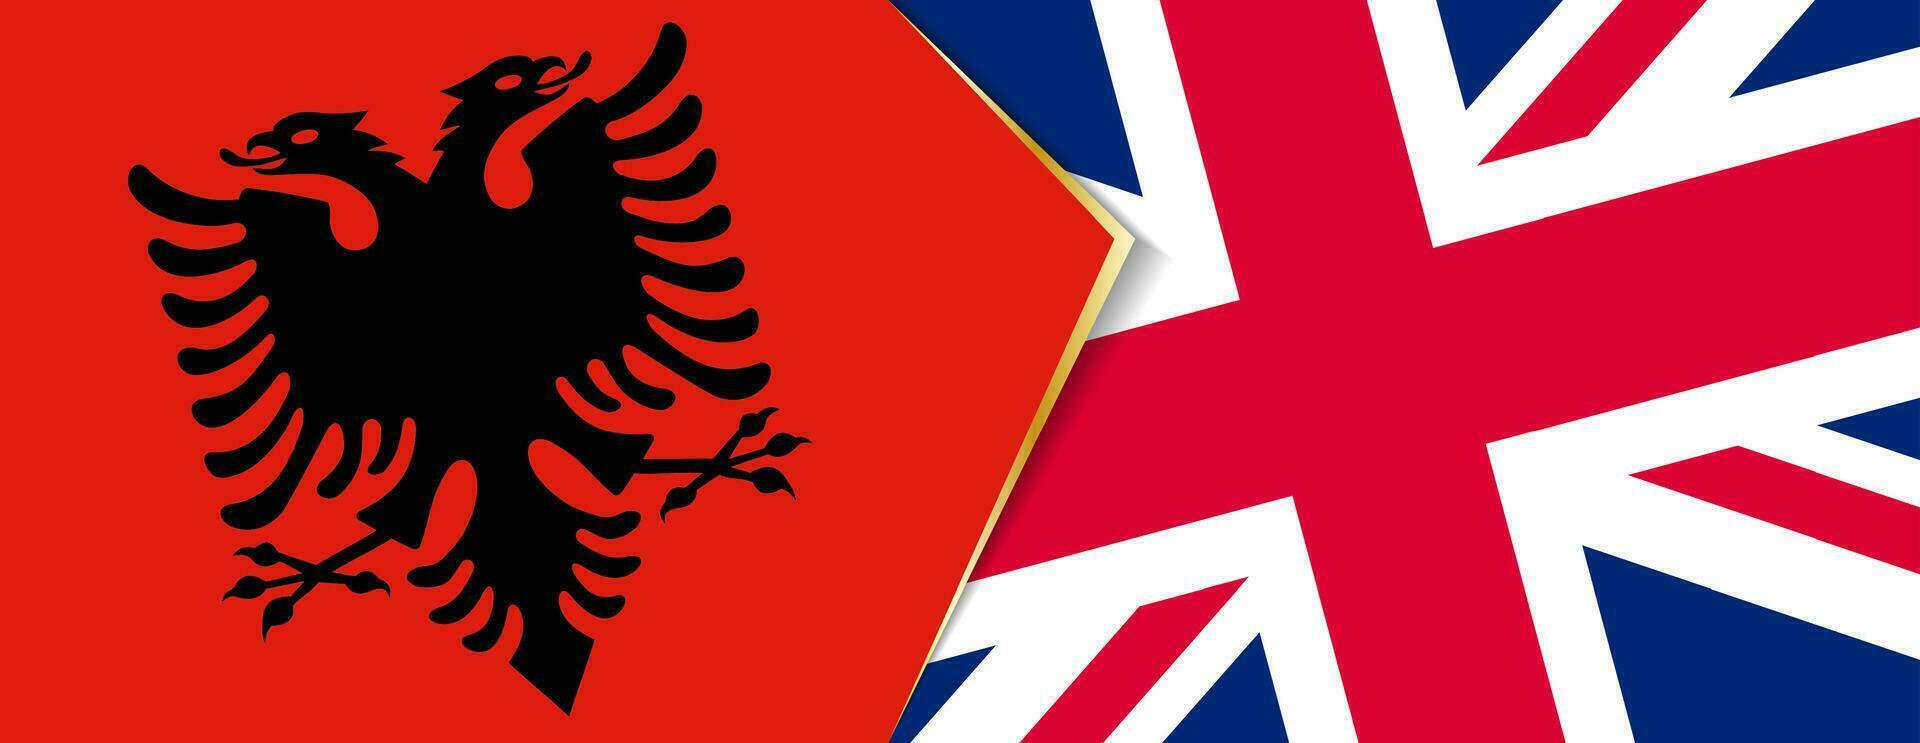 Albanien und vereinigt Königreich Flaggen, zwei Vektor Flaggen.